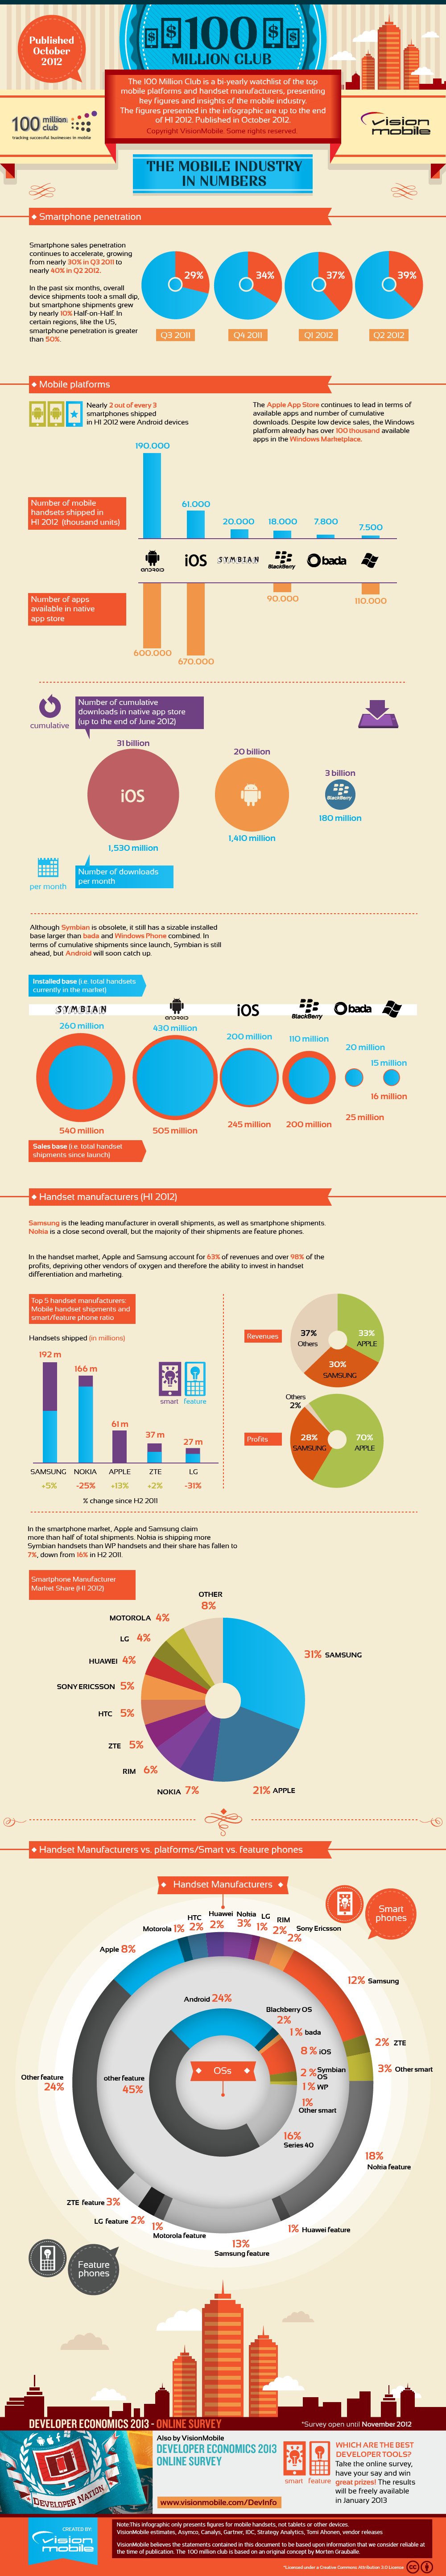 Infografía: La industria móvil en números